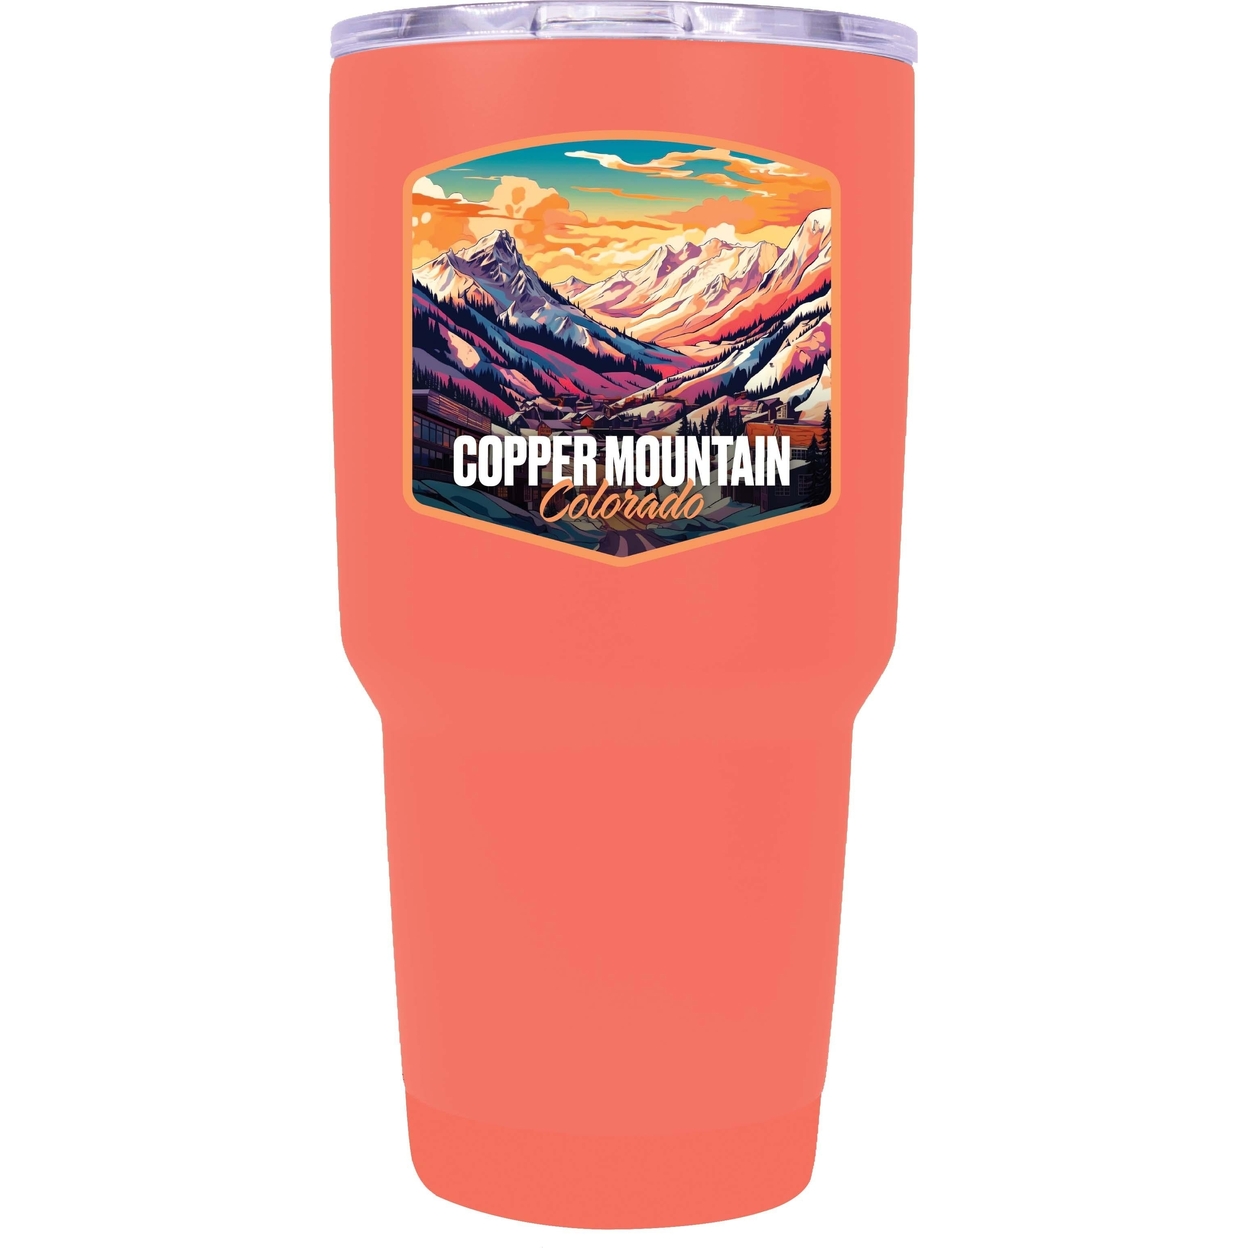 Copper Mountain A Souvenir 24 Oz Insulated Tumbler - White,,Single